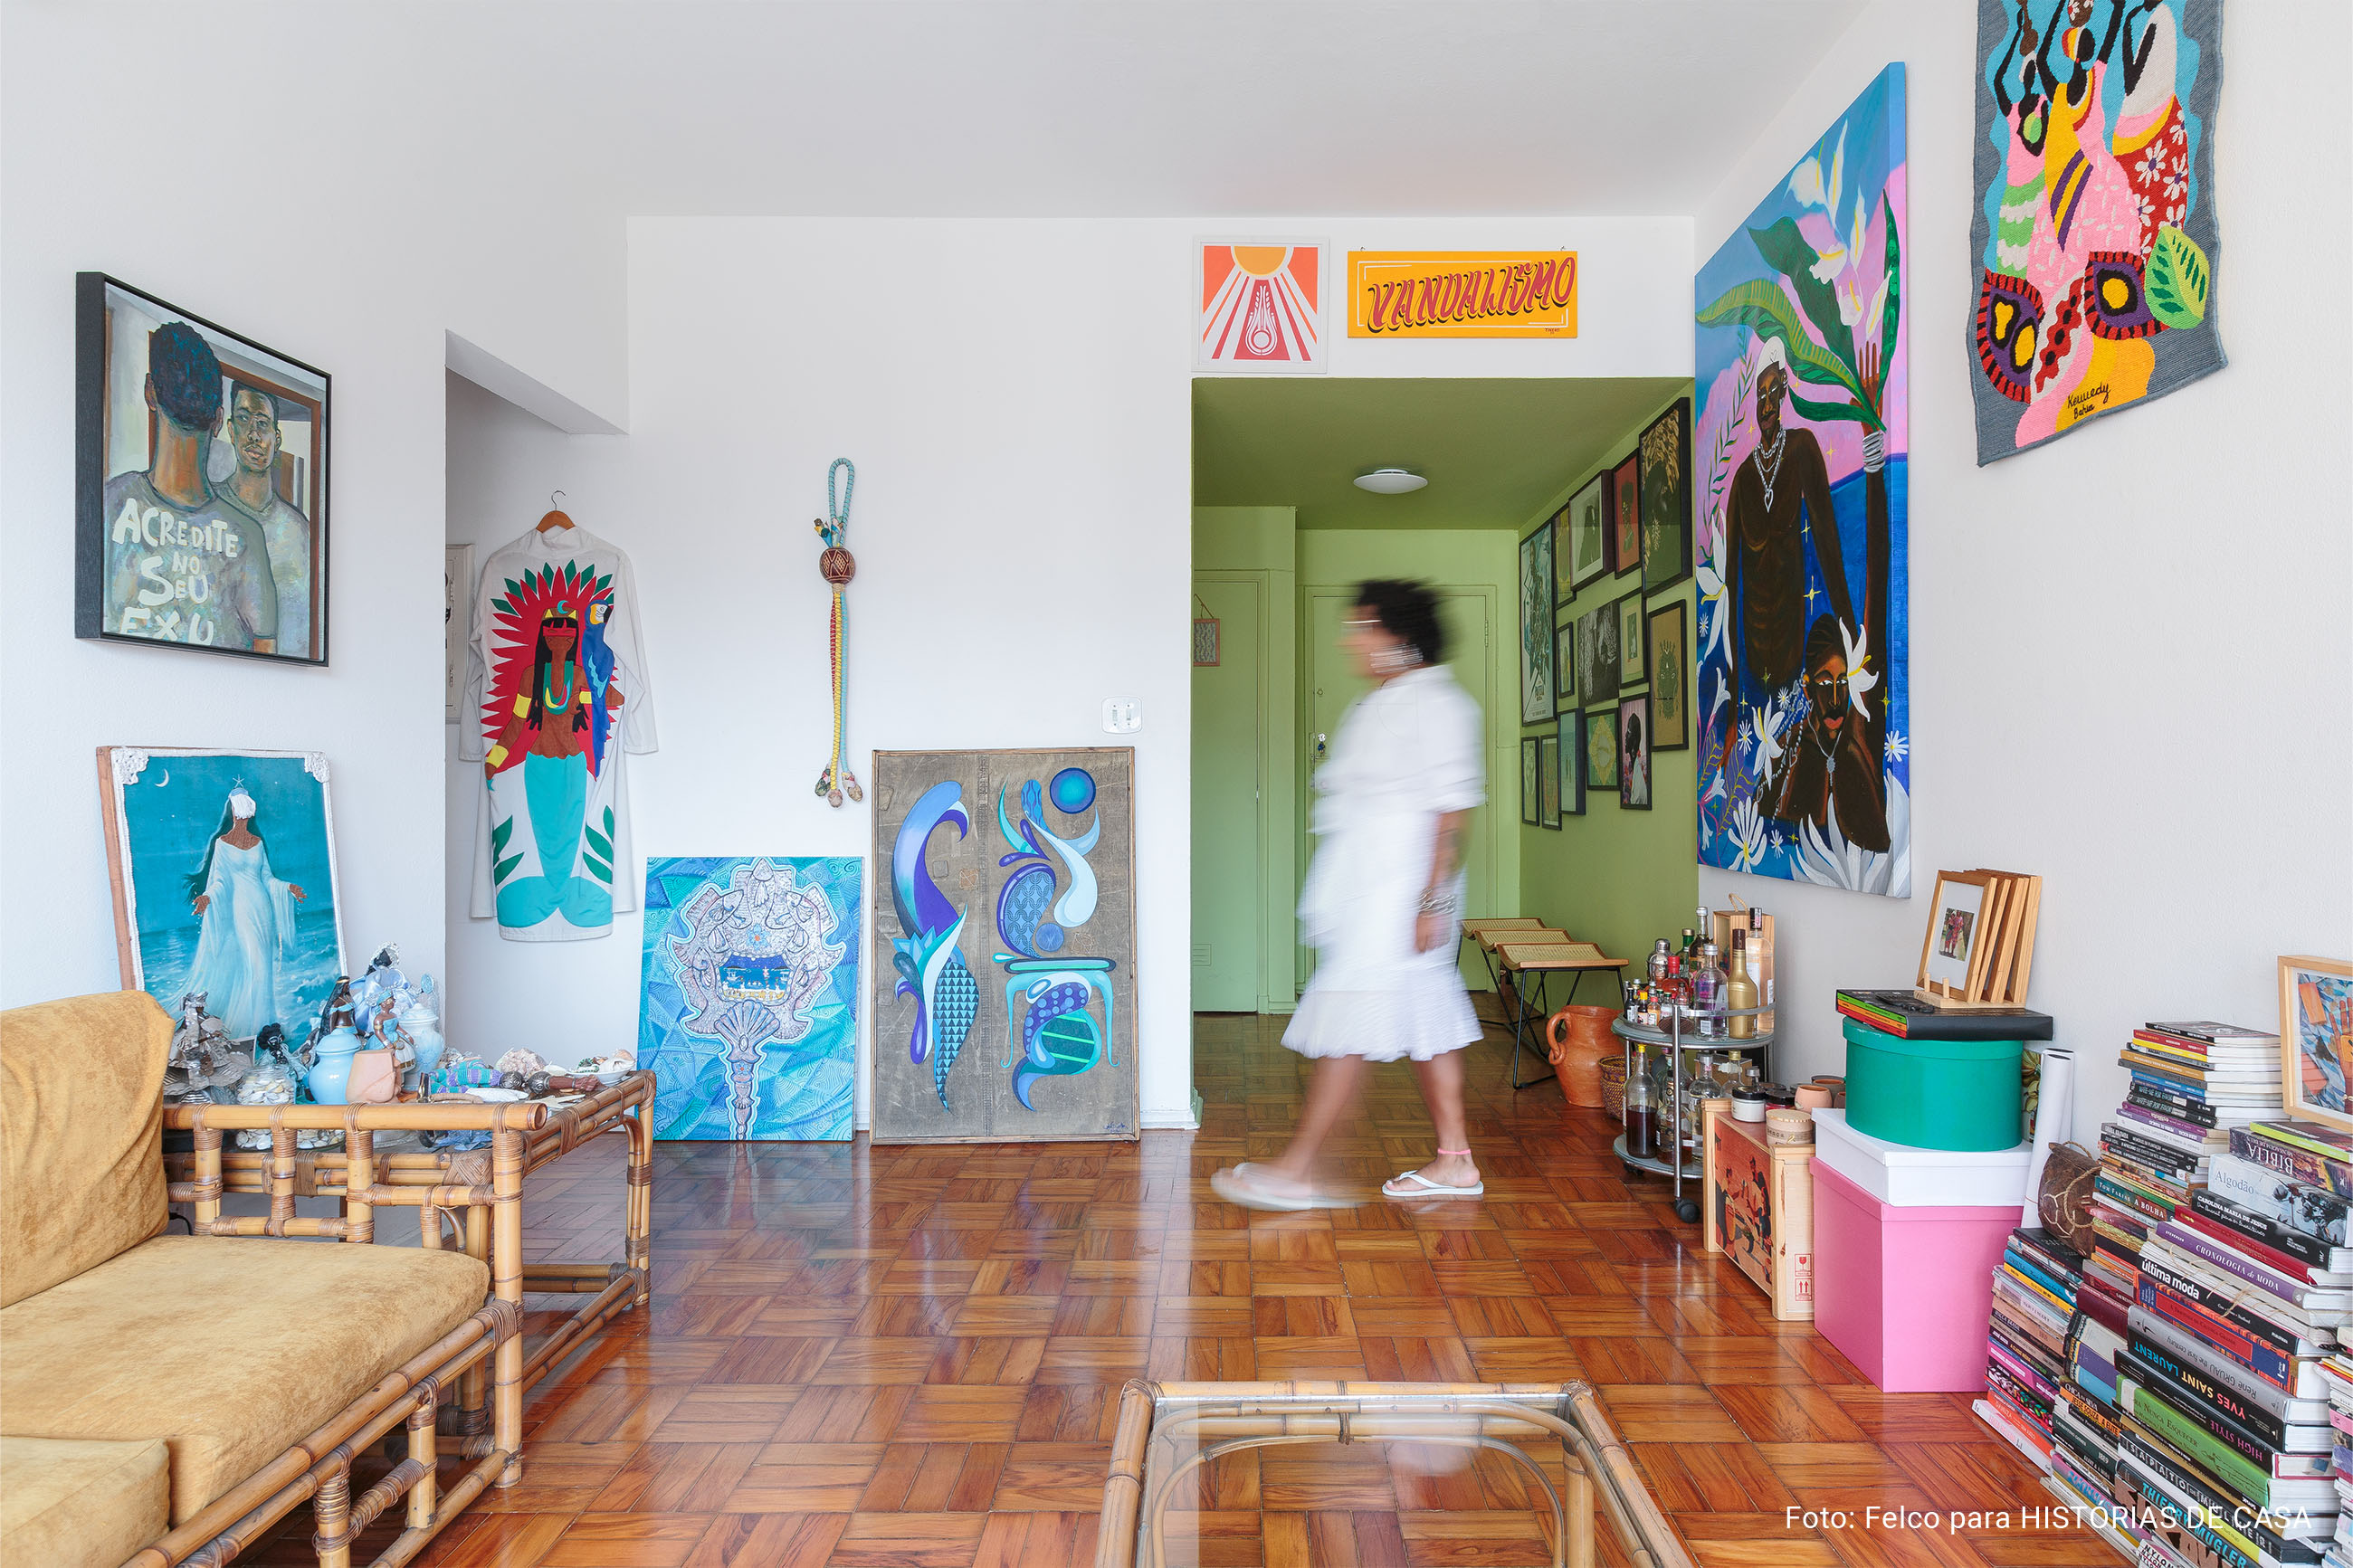 Apartamento alugado com paredes coloridas e decoração afrobrasileira.